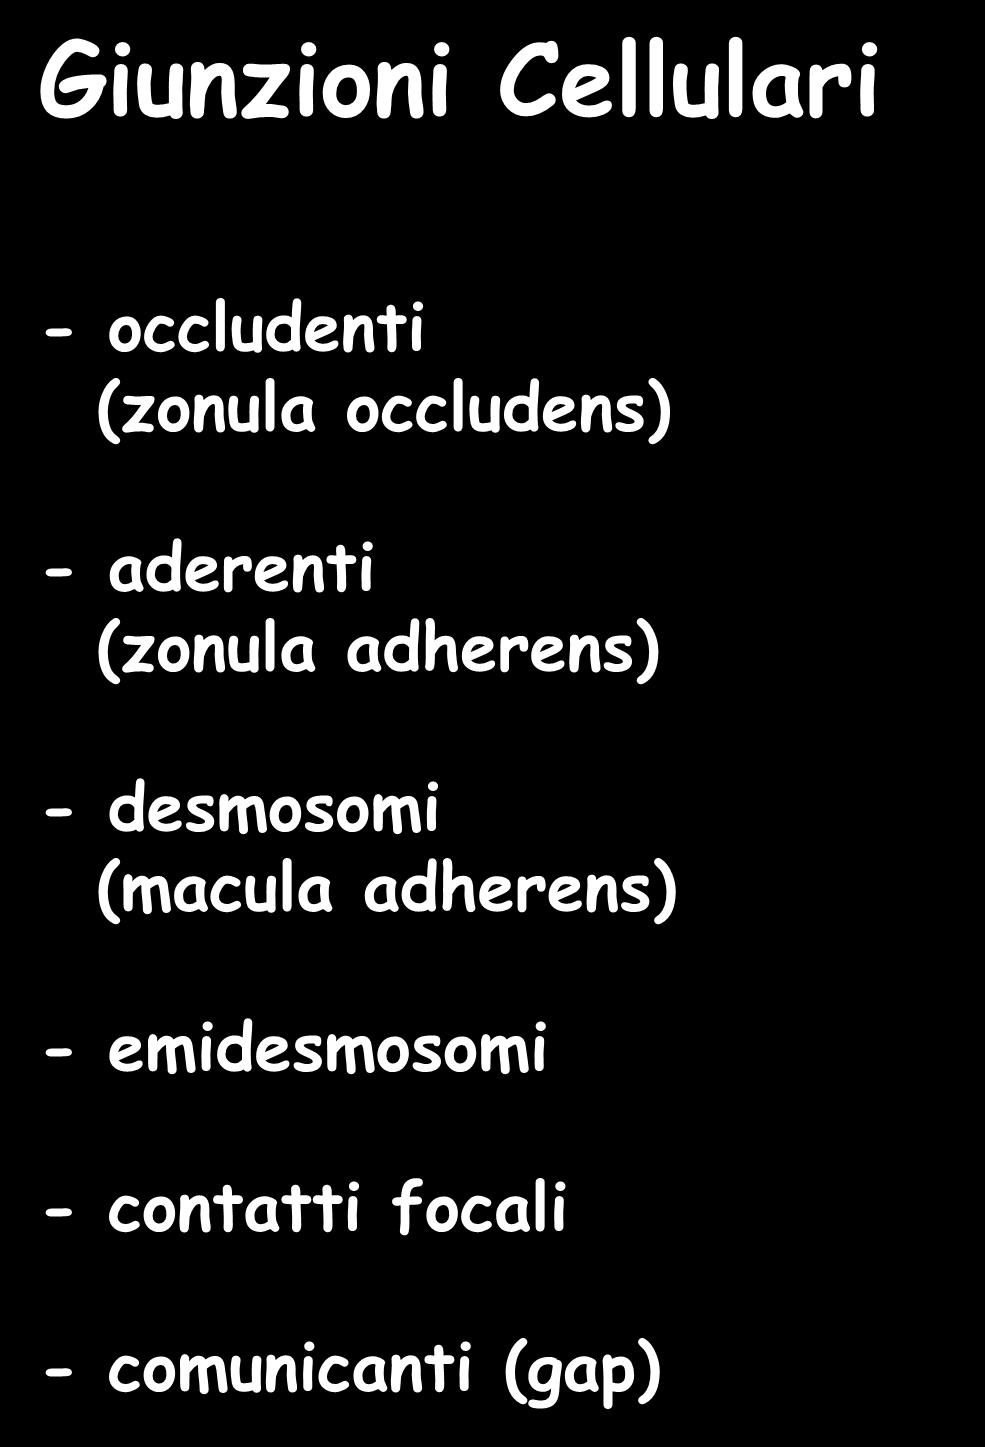 Giunzioni Cellulari - occludenti (zonula